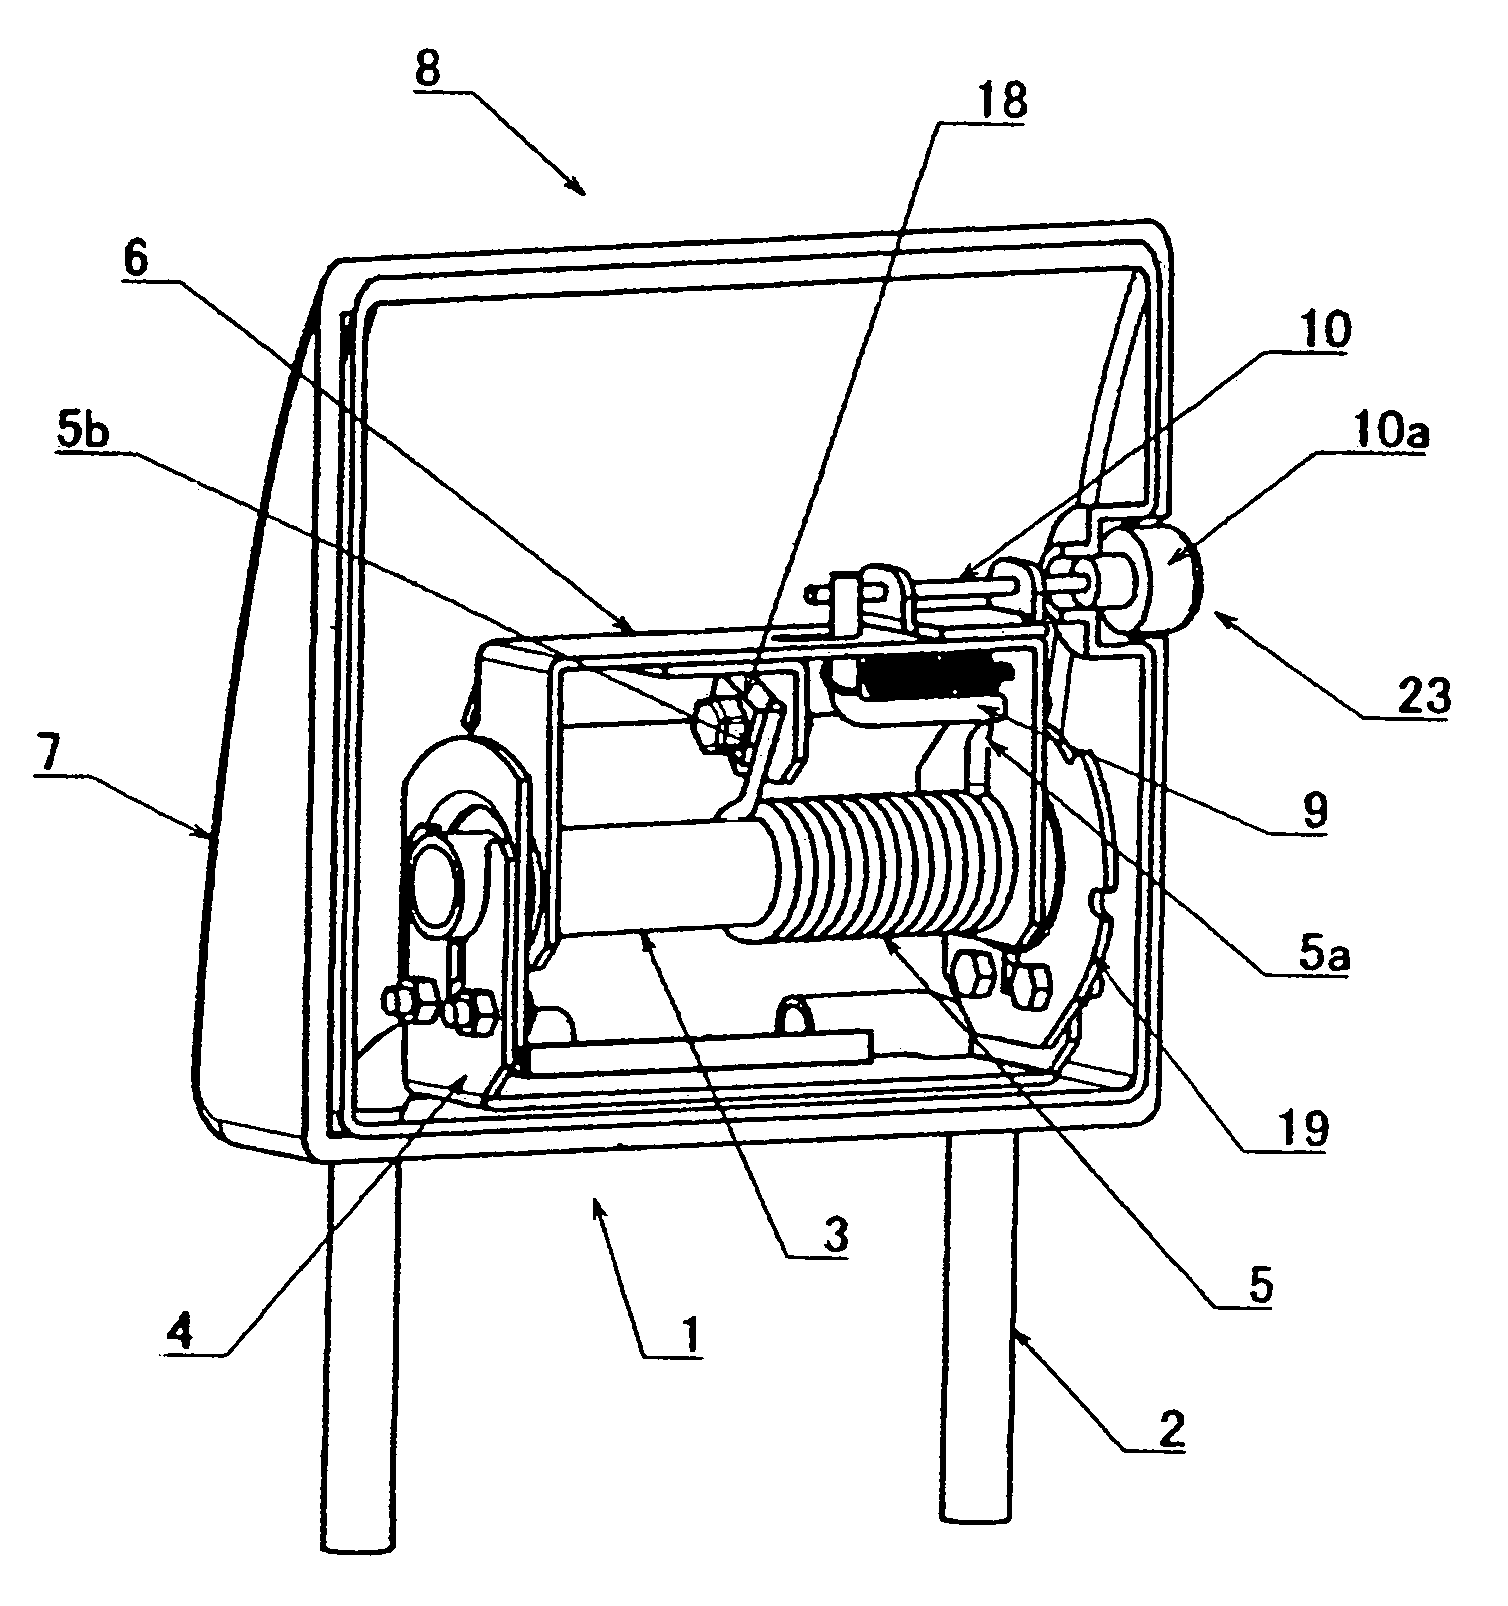 Headrest for vehicles